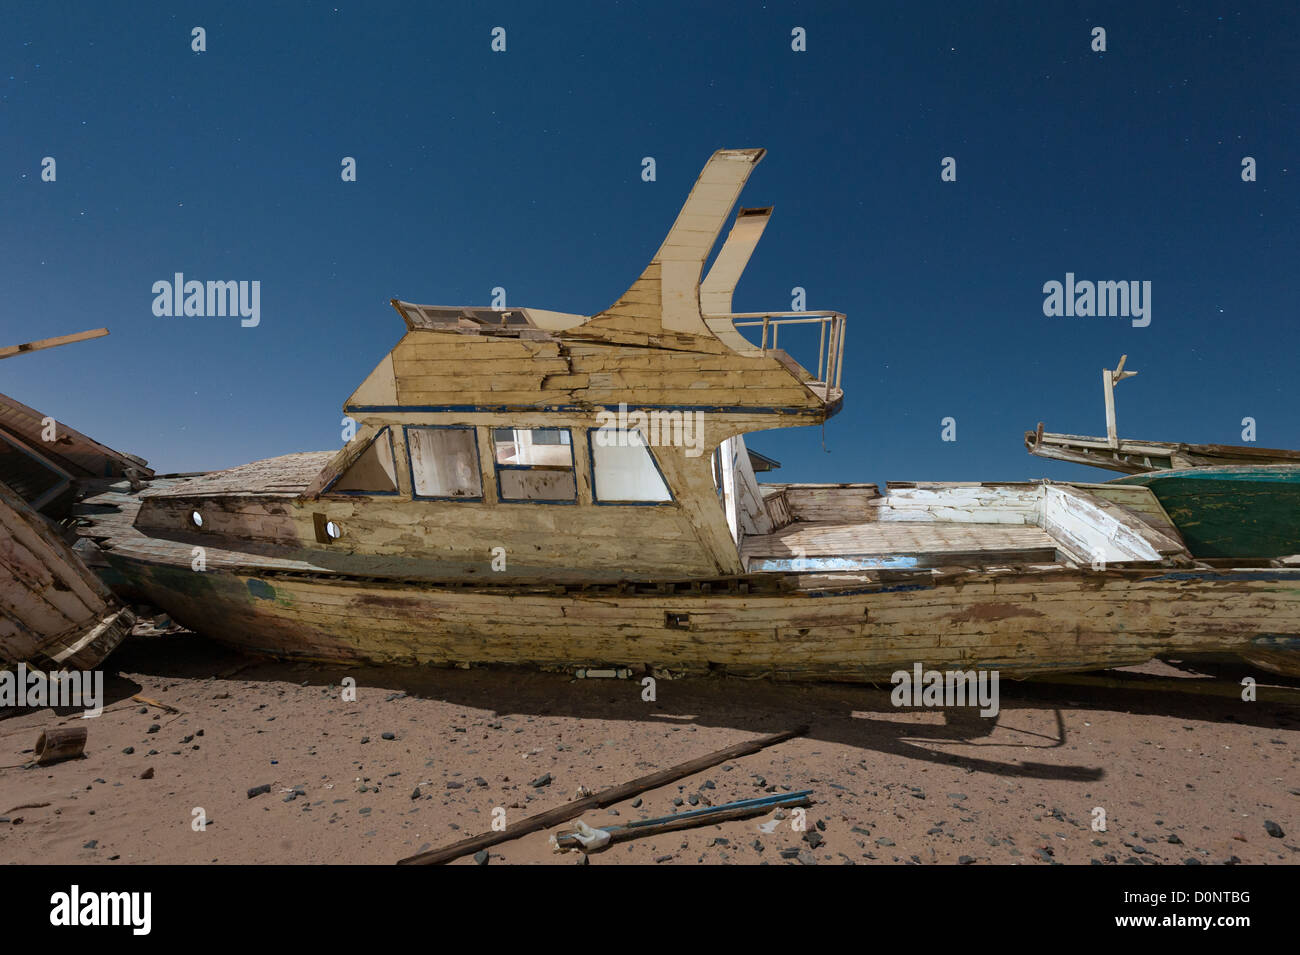 Verlassene verfallene Holzboote in der Wüste unter dem Nachthimmel mit abstrakten Lichteffekte Stockfoto